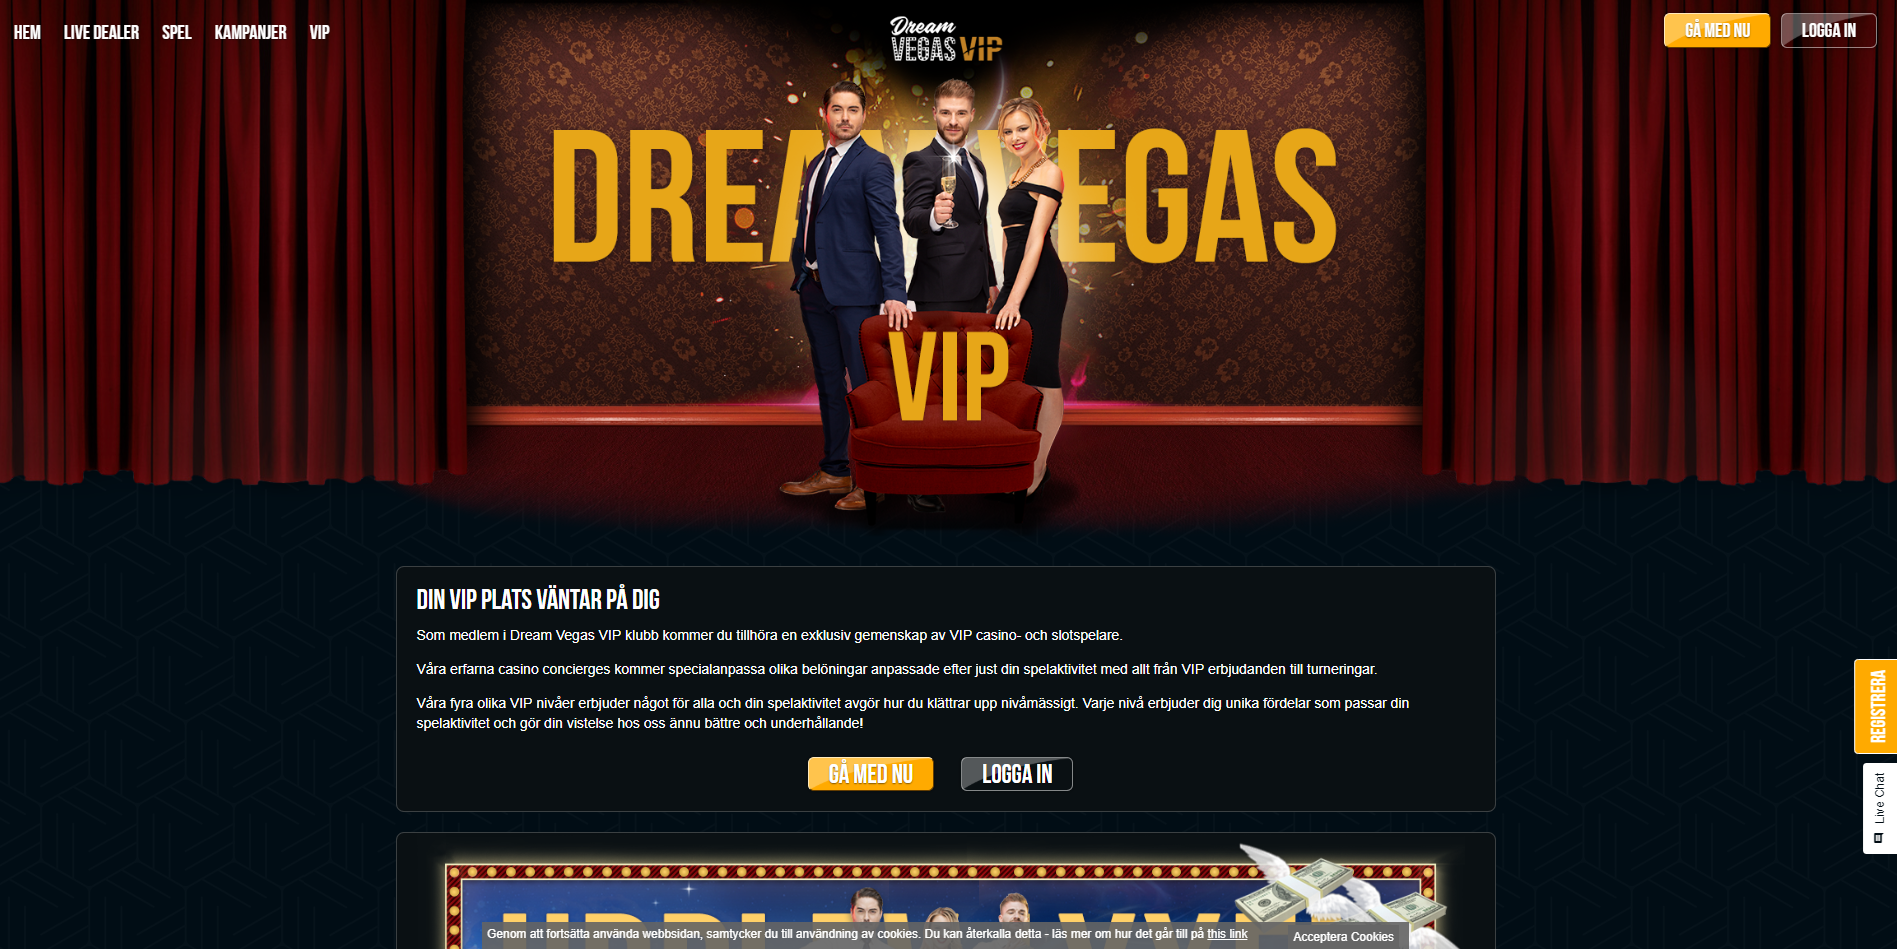 Vegas dream poker app